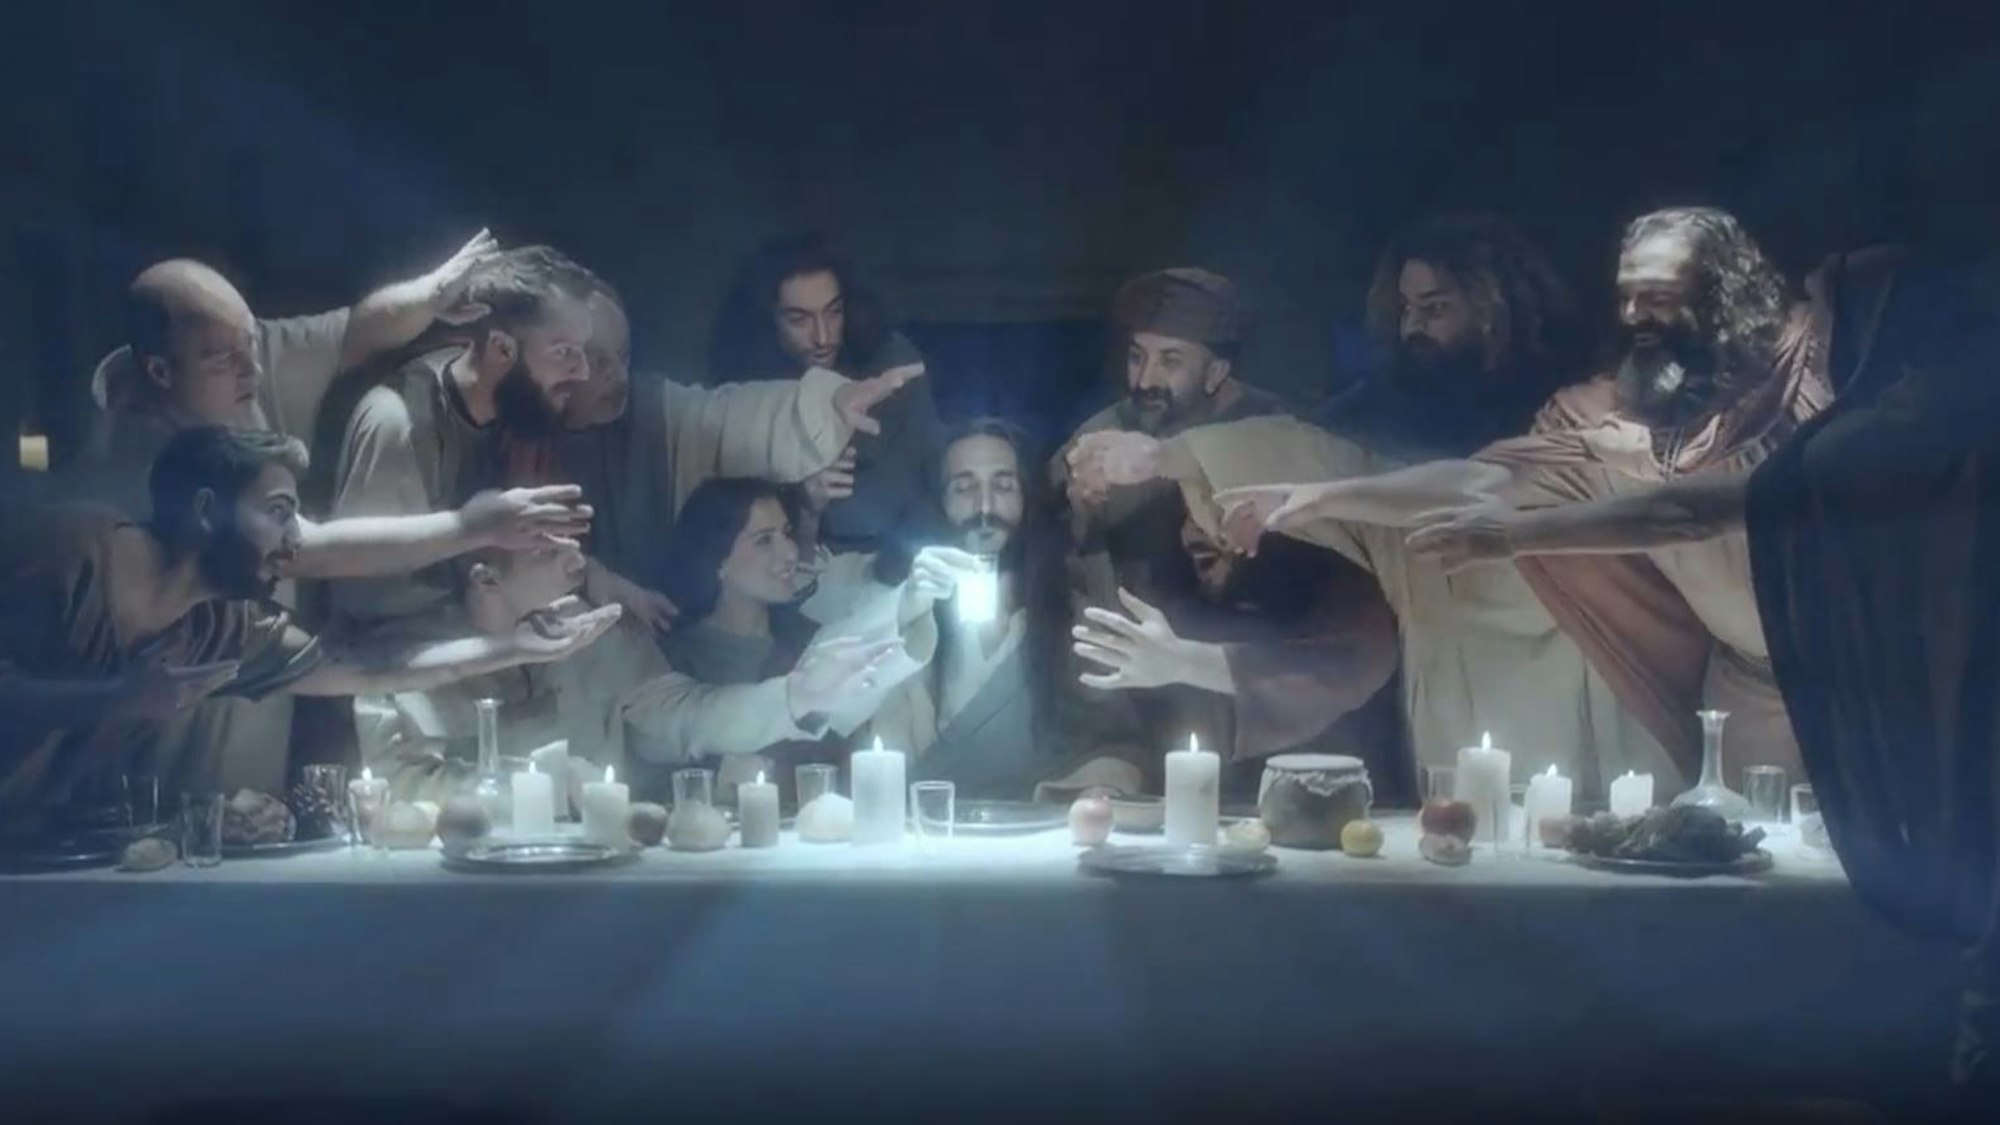 Eine Szene aus dem Video: Jesus hat Wasser und den Raki gemischt und nimmt gleich einen Schluck des milchigen Getränks, das wie eine Er­schei­nung wirkt. Im Werbeclip ist neben den Jüngern auch eine Frau am Tisch.